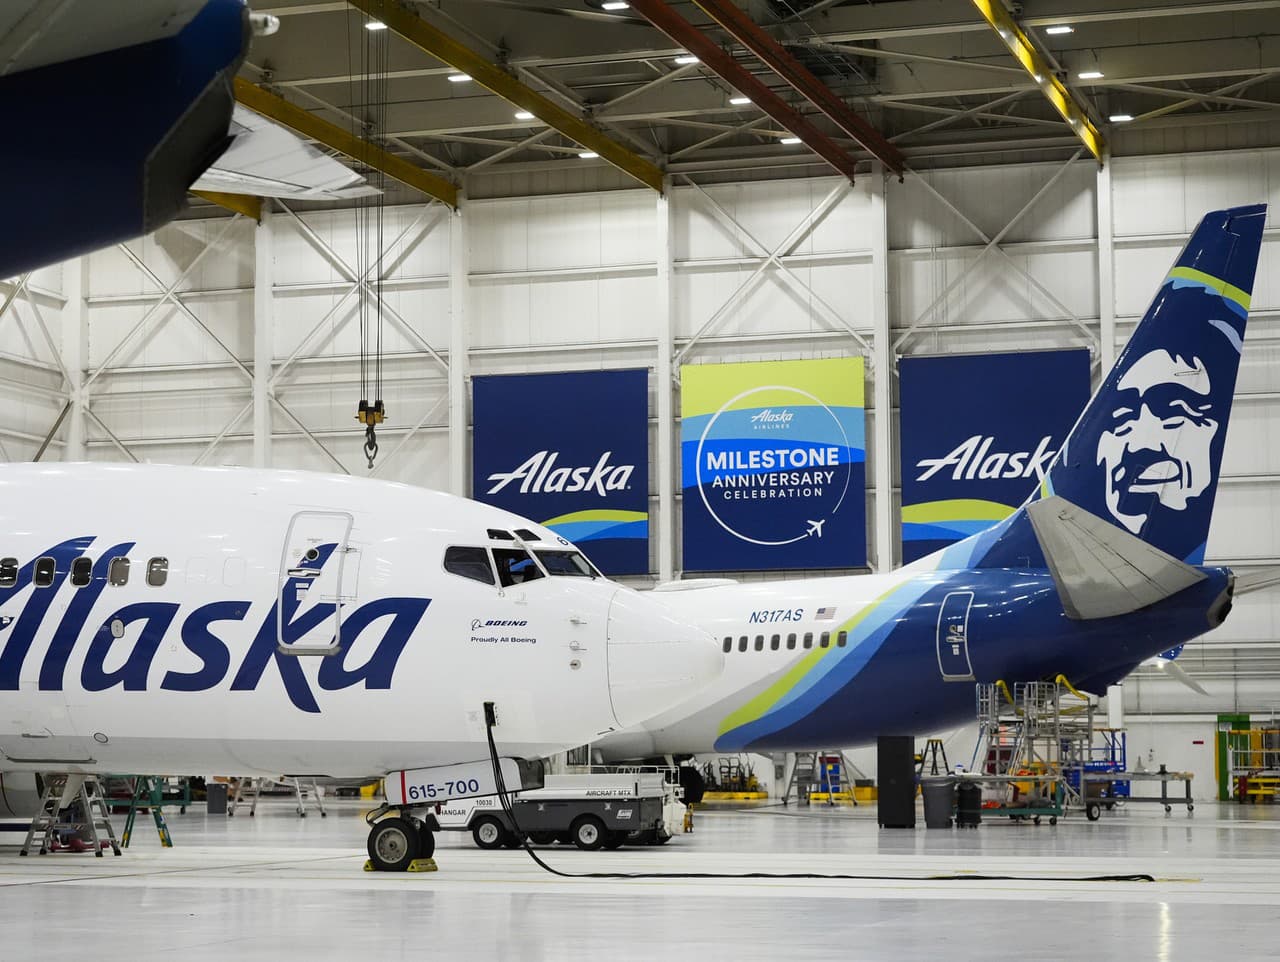 Lietadlá Alaska Airlines sedia v hangári leteckej spoločnosti na medzinárodnom letisku Seattle-Tacoma.